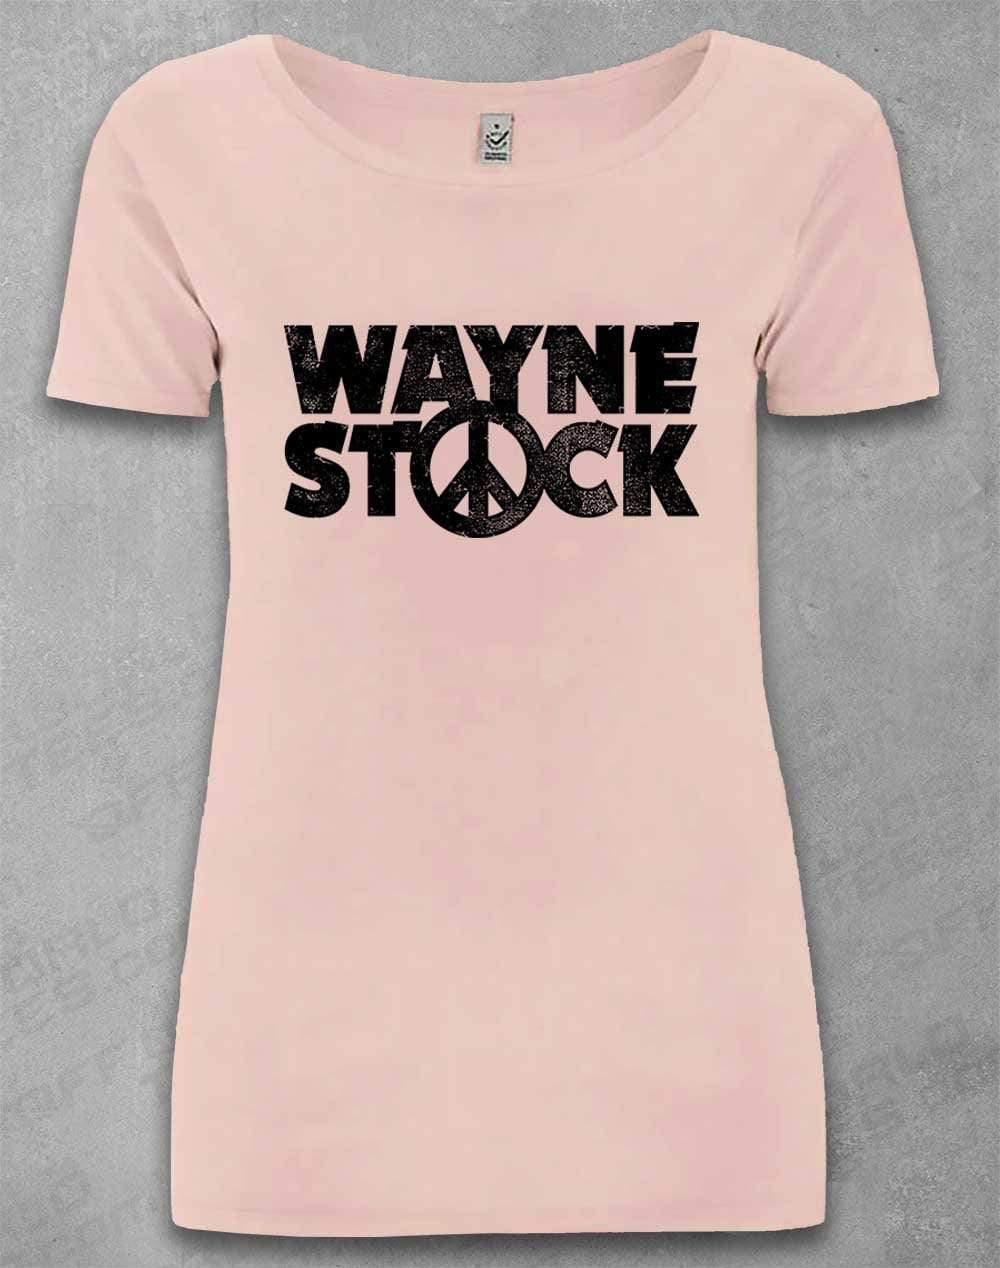 DELUXE Waynestock Organic Scoop Neck T-Shirt 8-10 / Light Pink  - Off World Tees